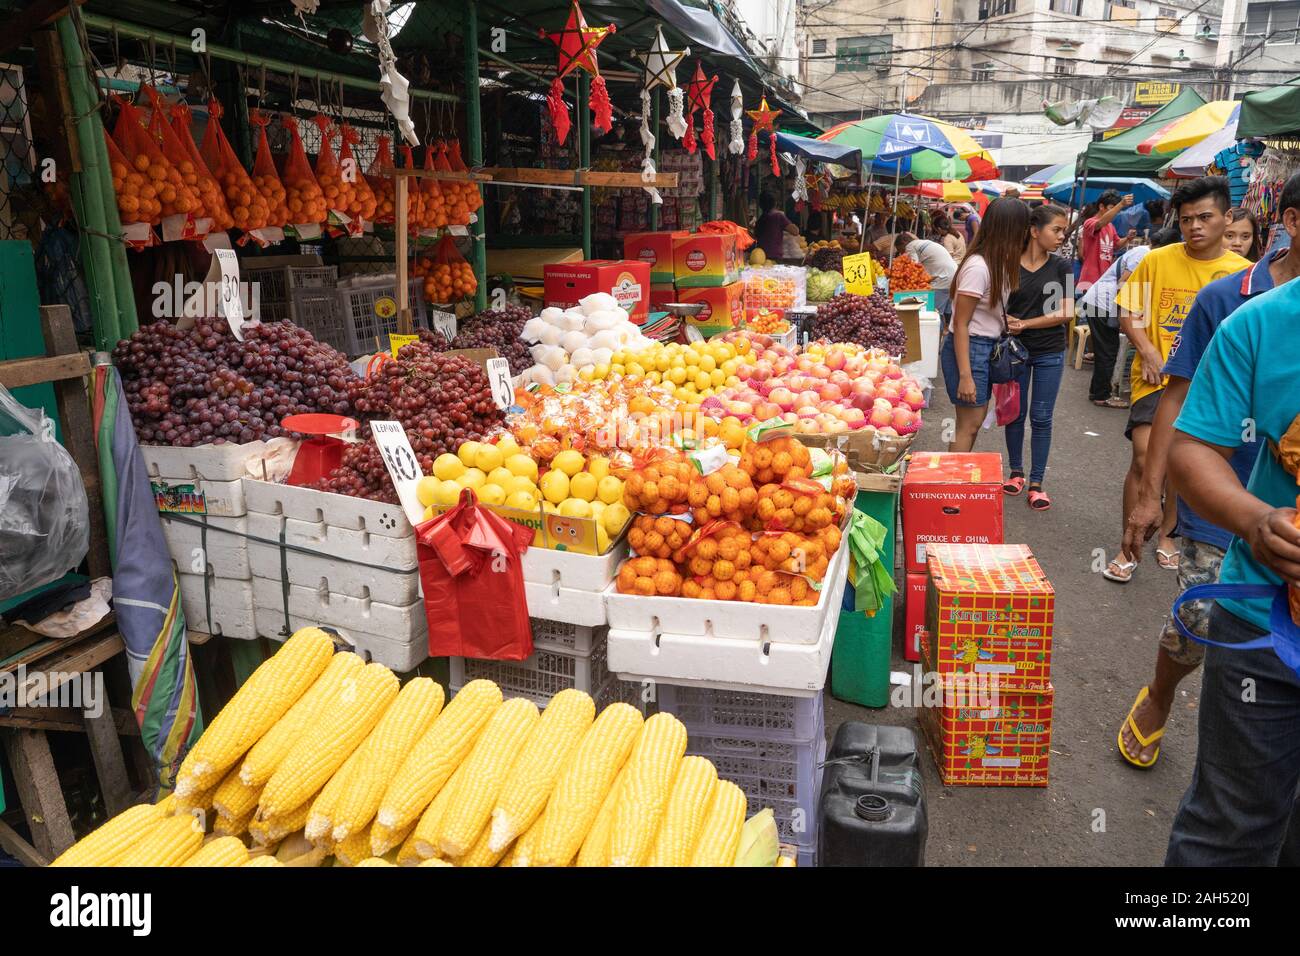 Una scena di strada in un mercato della frutta di un paio di giorni prima del giorno di Natale,Cebu City, Filippine Foto Stock